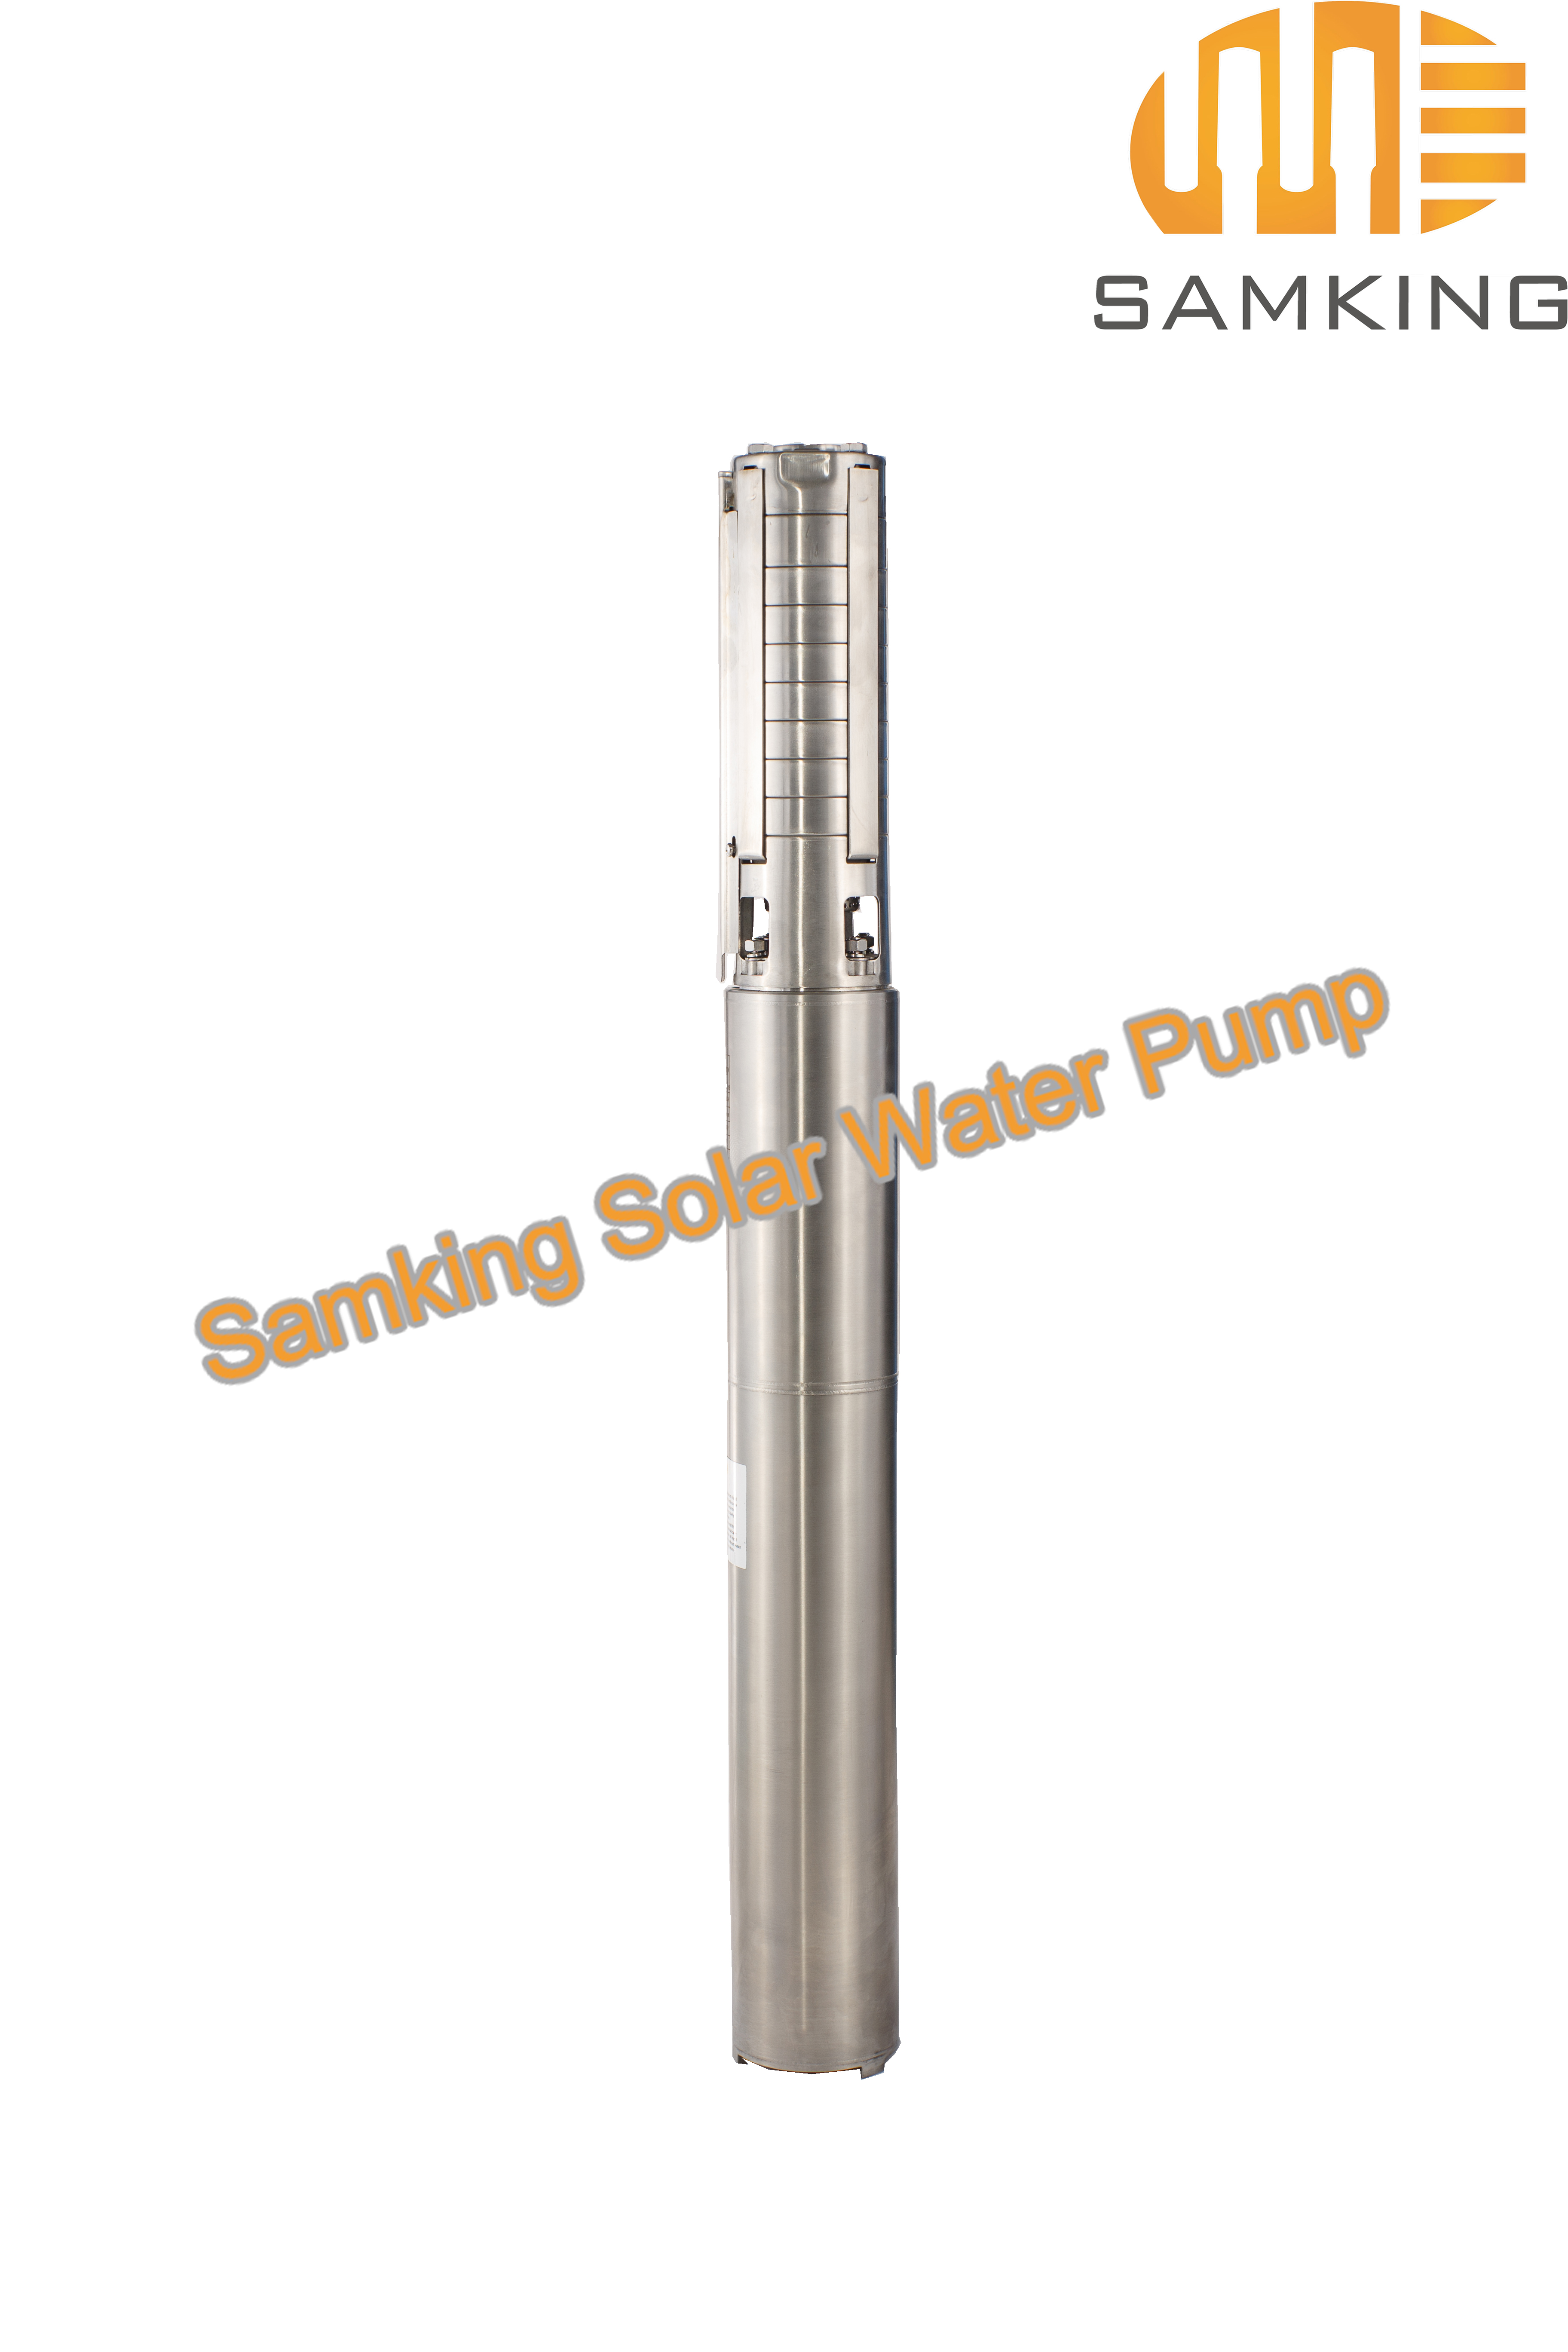 4SP2-7 Samking Solar Water Pump